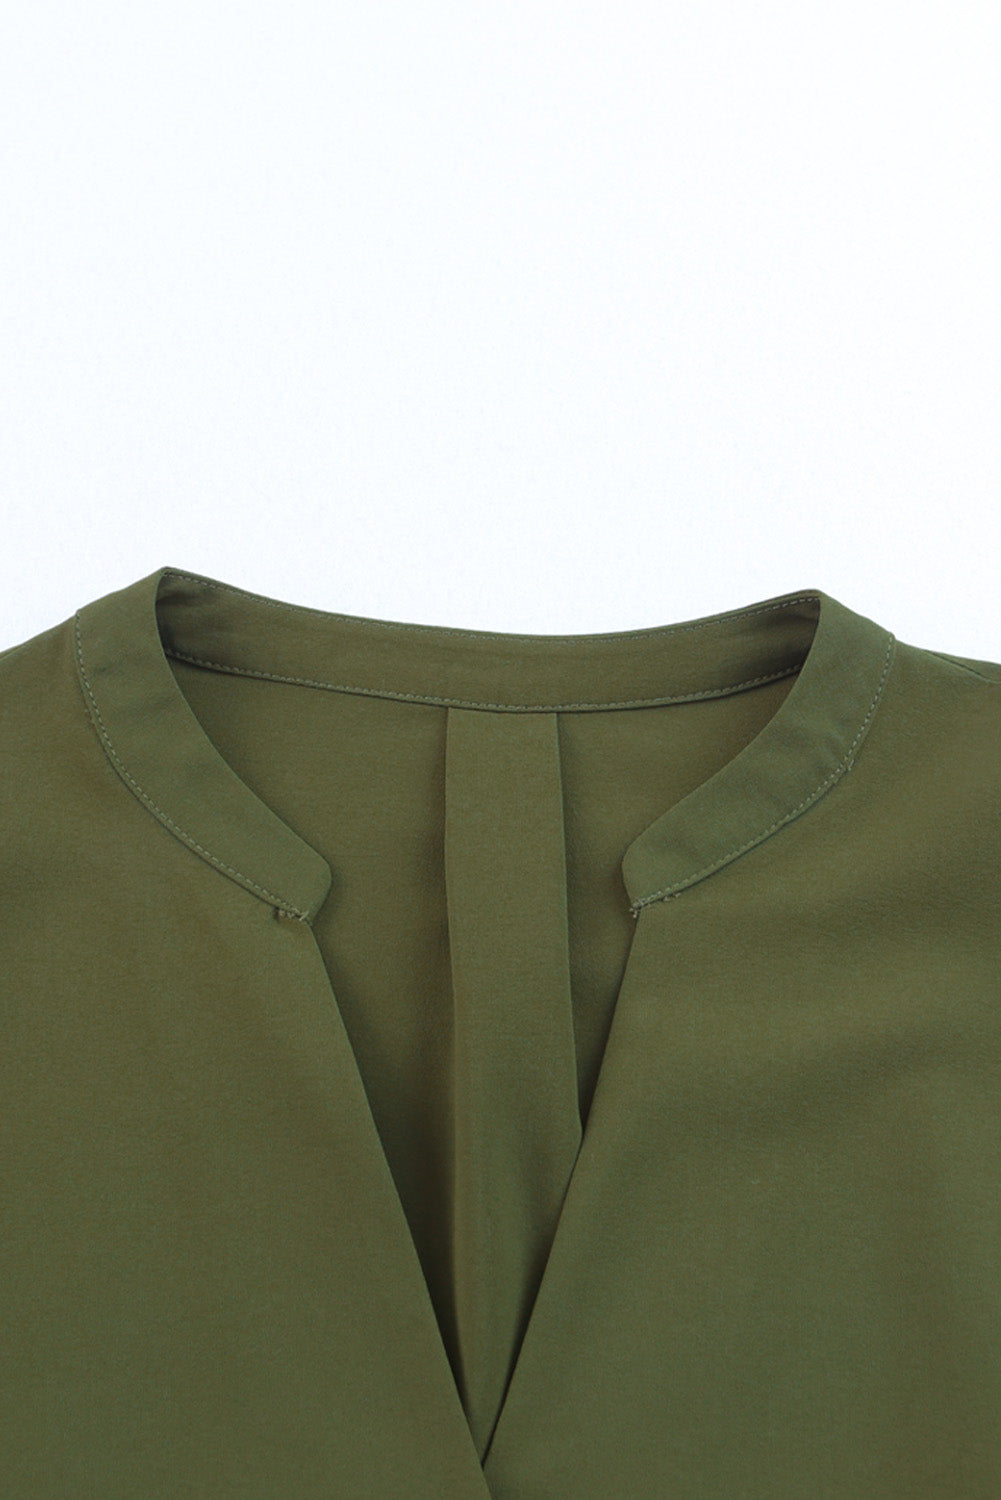 Green Split V Neck Ruffled Sleeves Shirt Dress